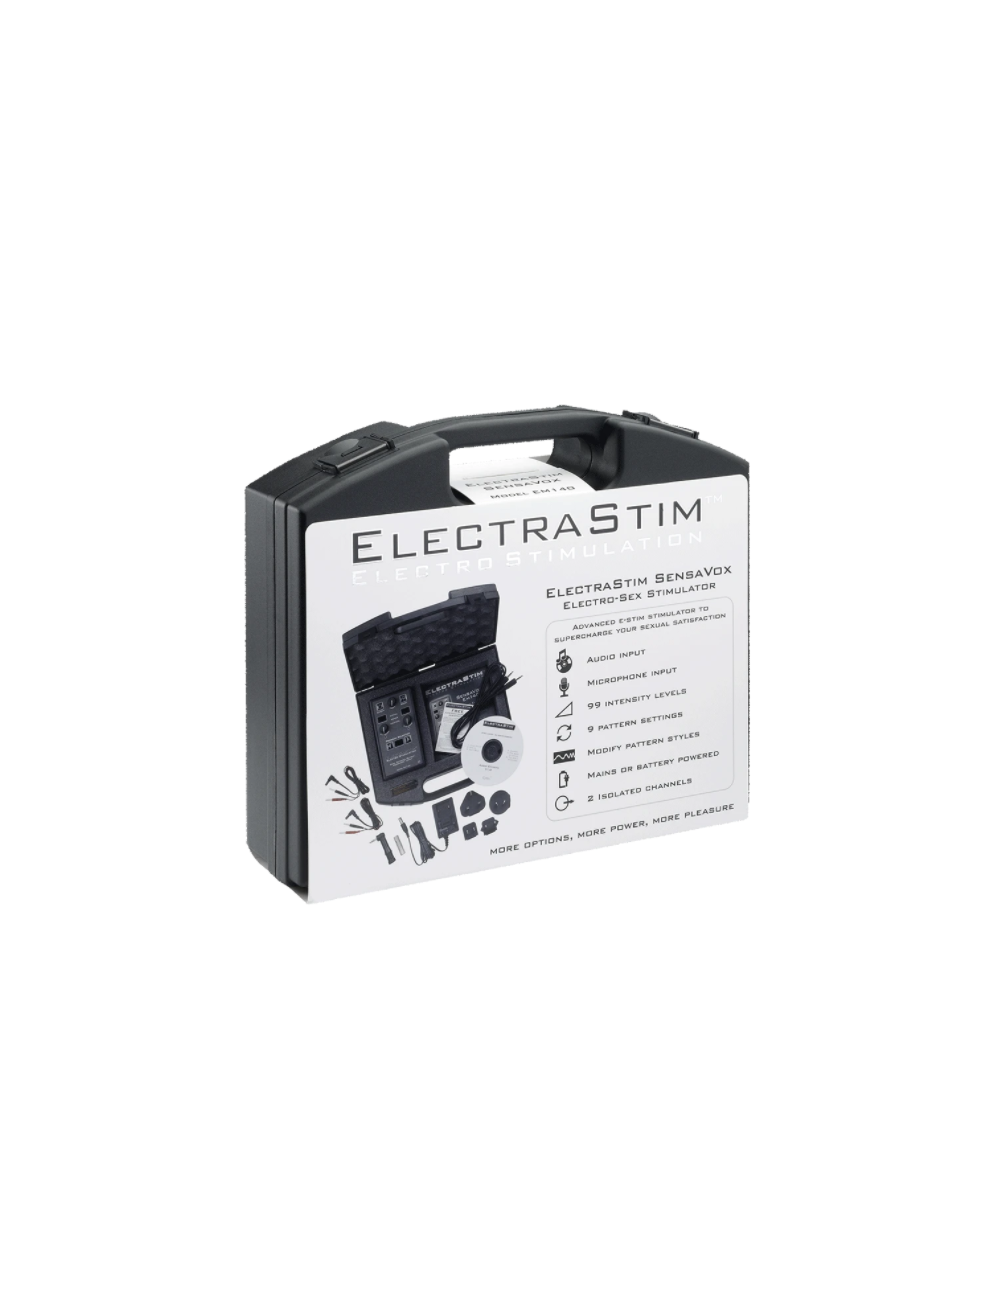 ELECTRASTIM  SENSAVOX E-STIM STIMULATOR